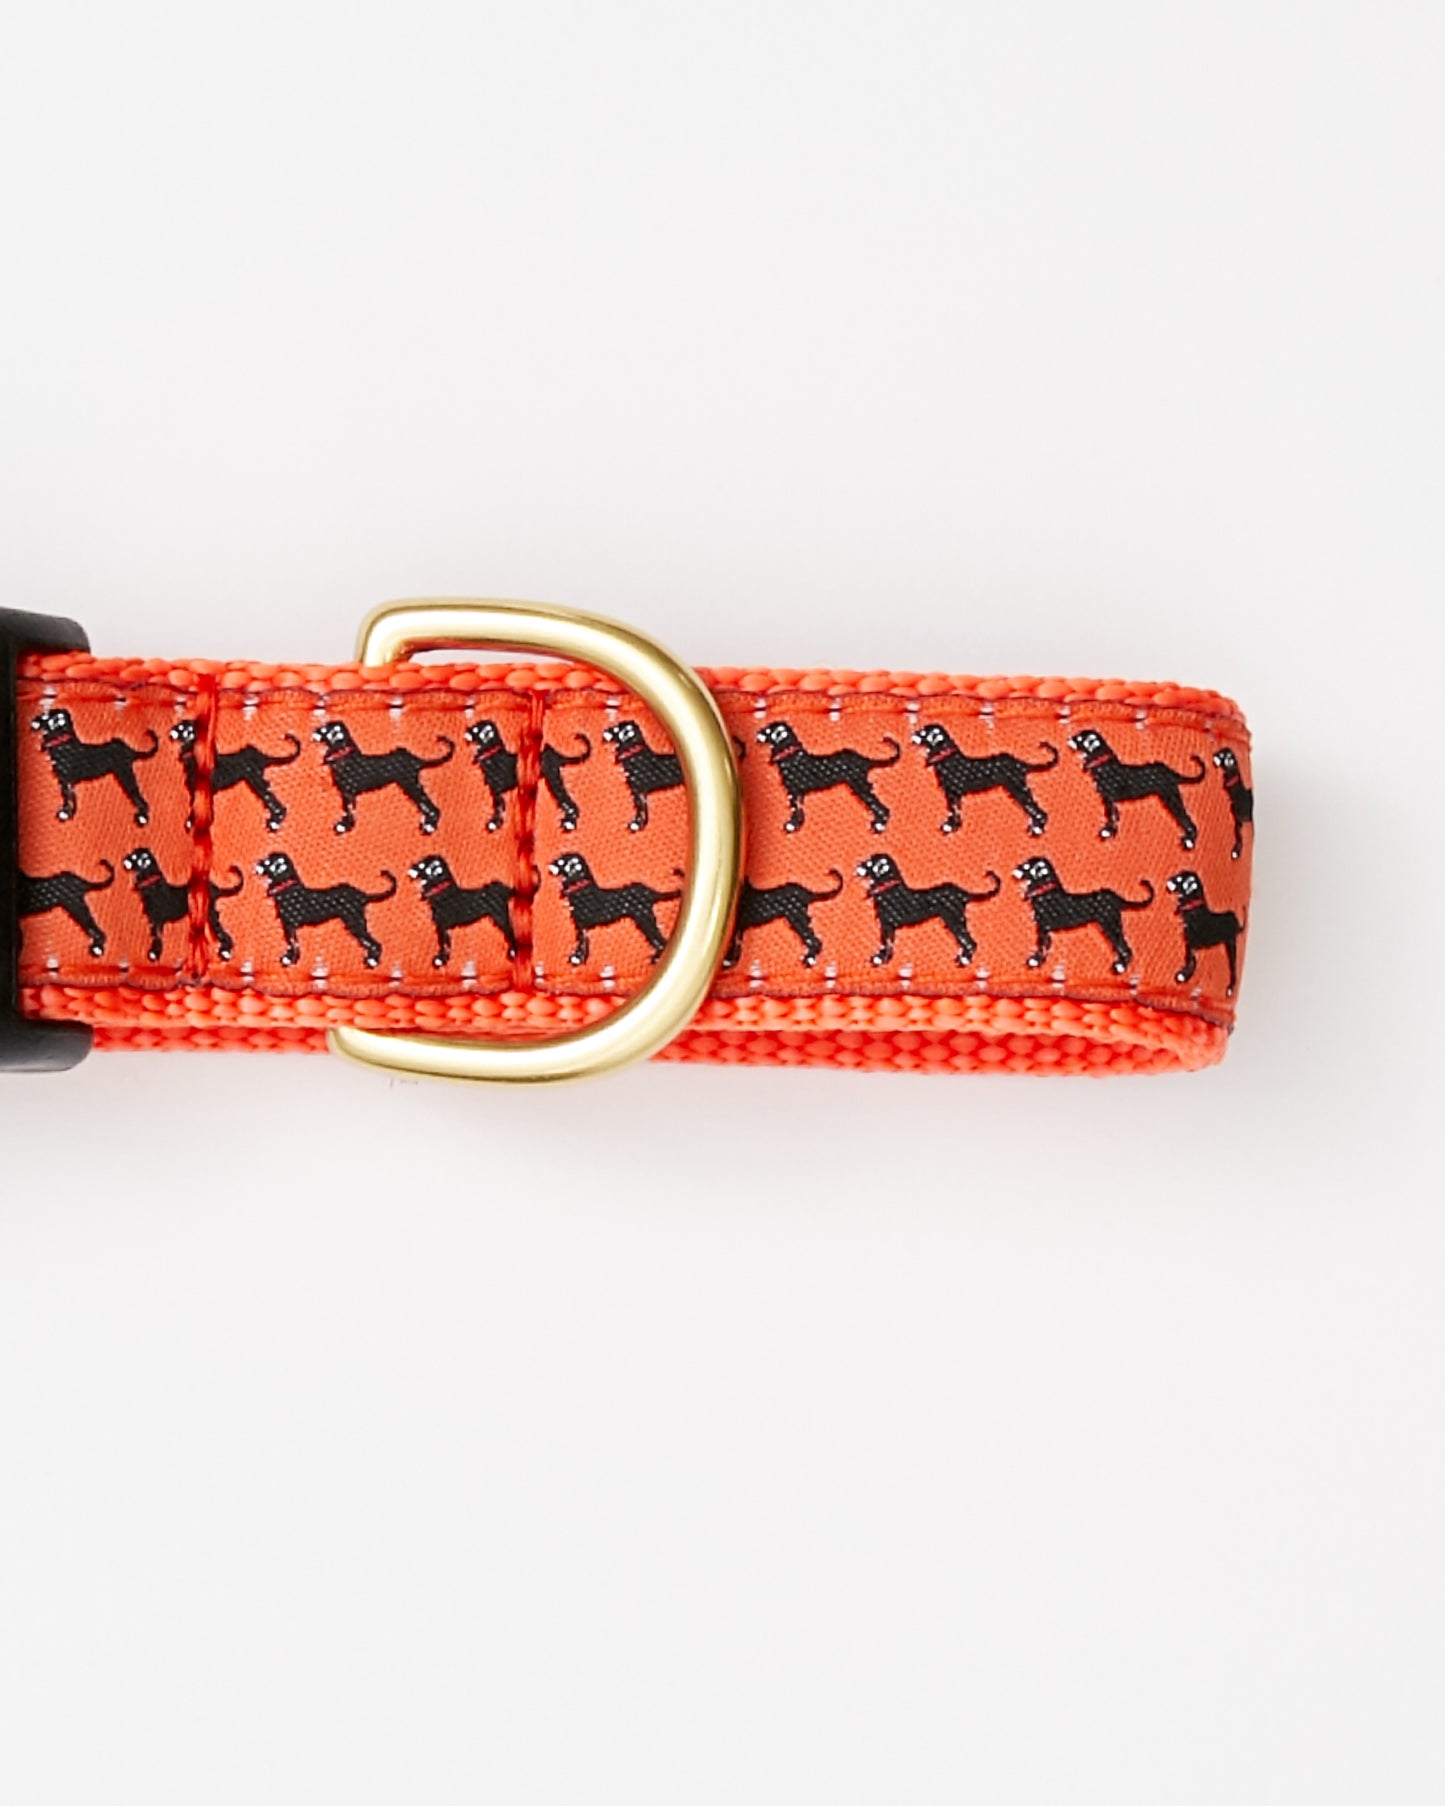 Collar with Mini Dog "Print"